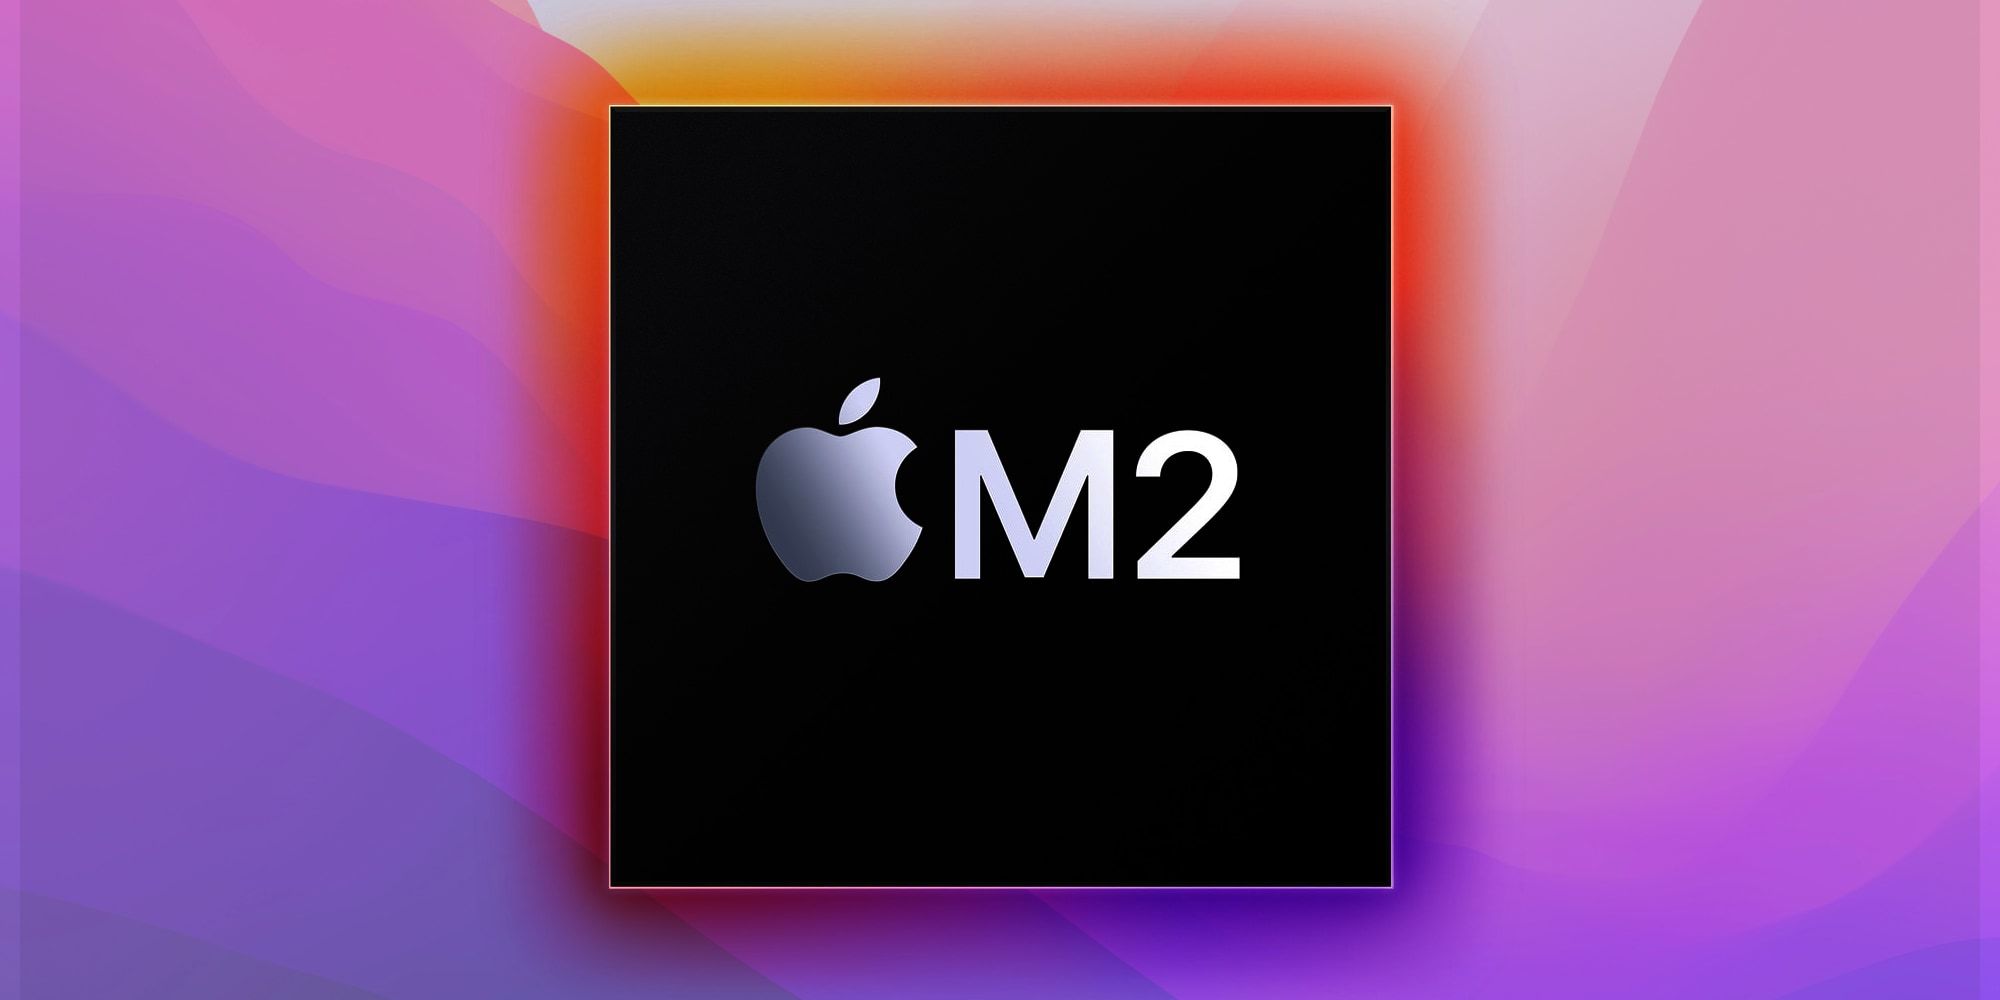 El procesador M2 de Apple ahora es oficial y promete un rendimiento aún mejor